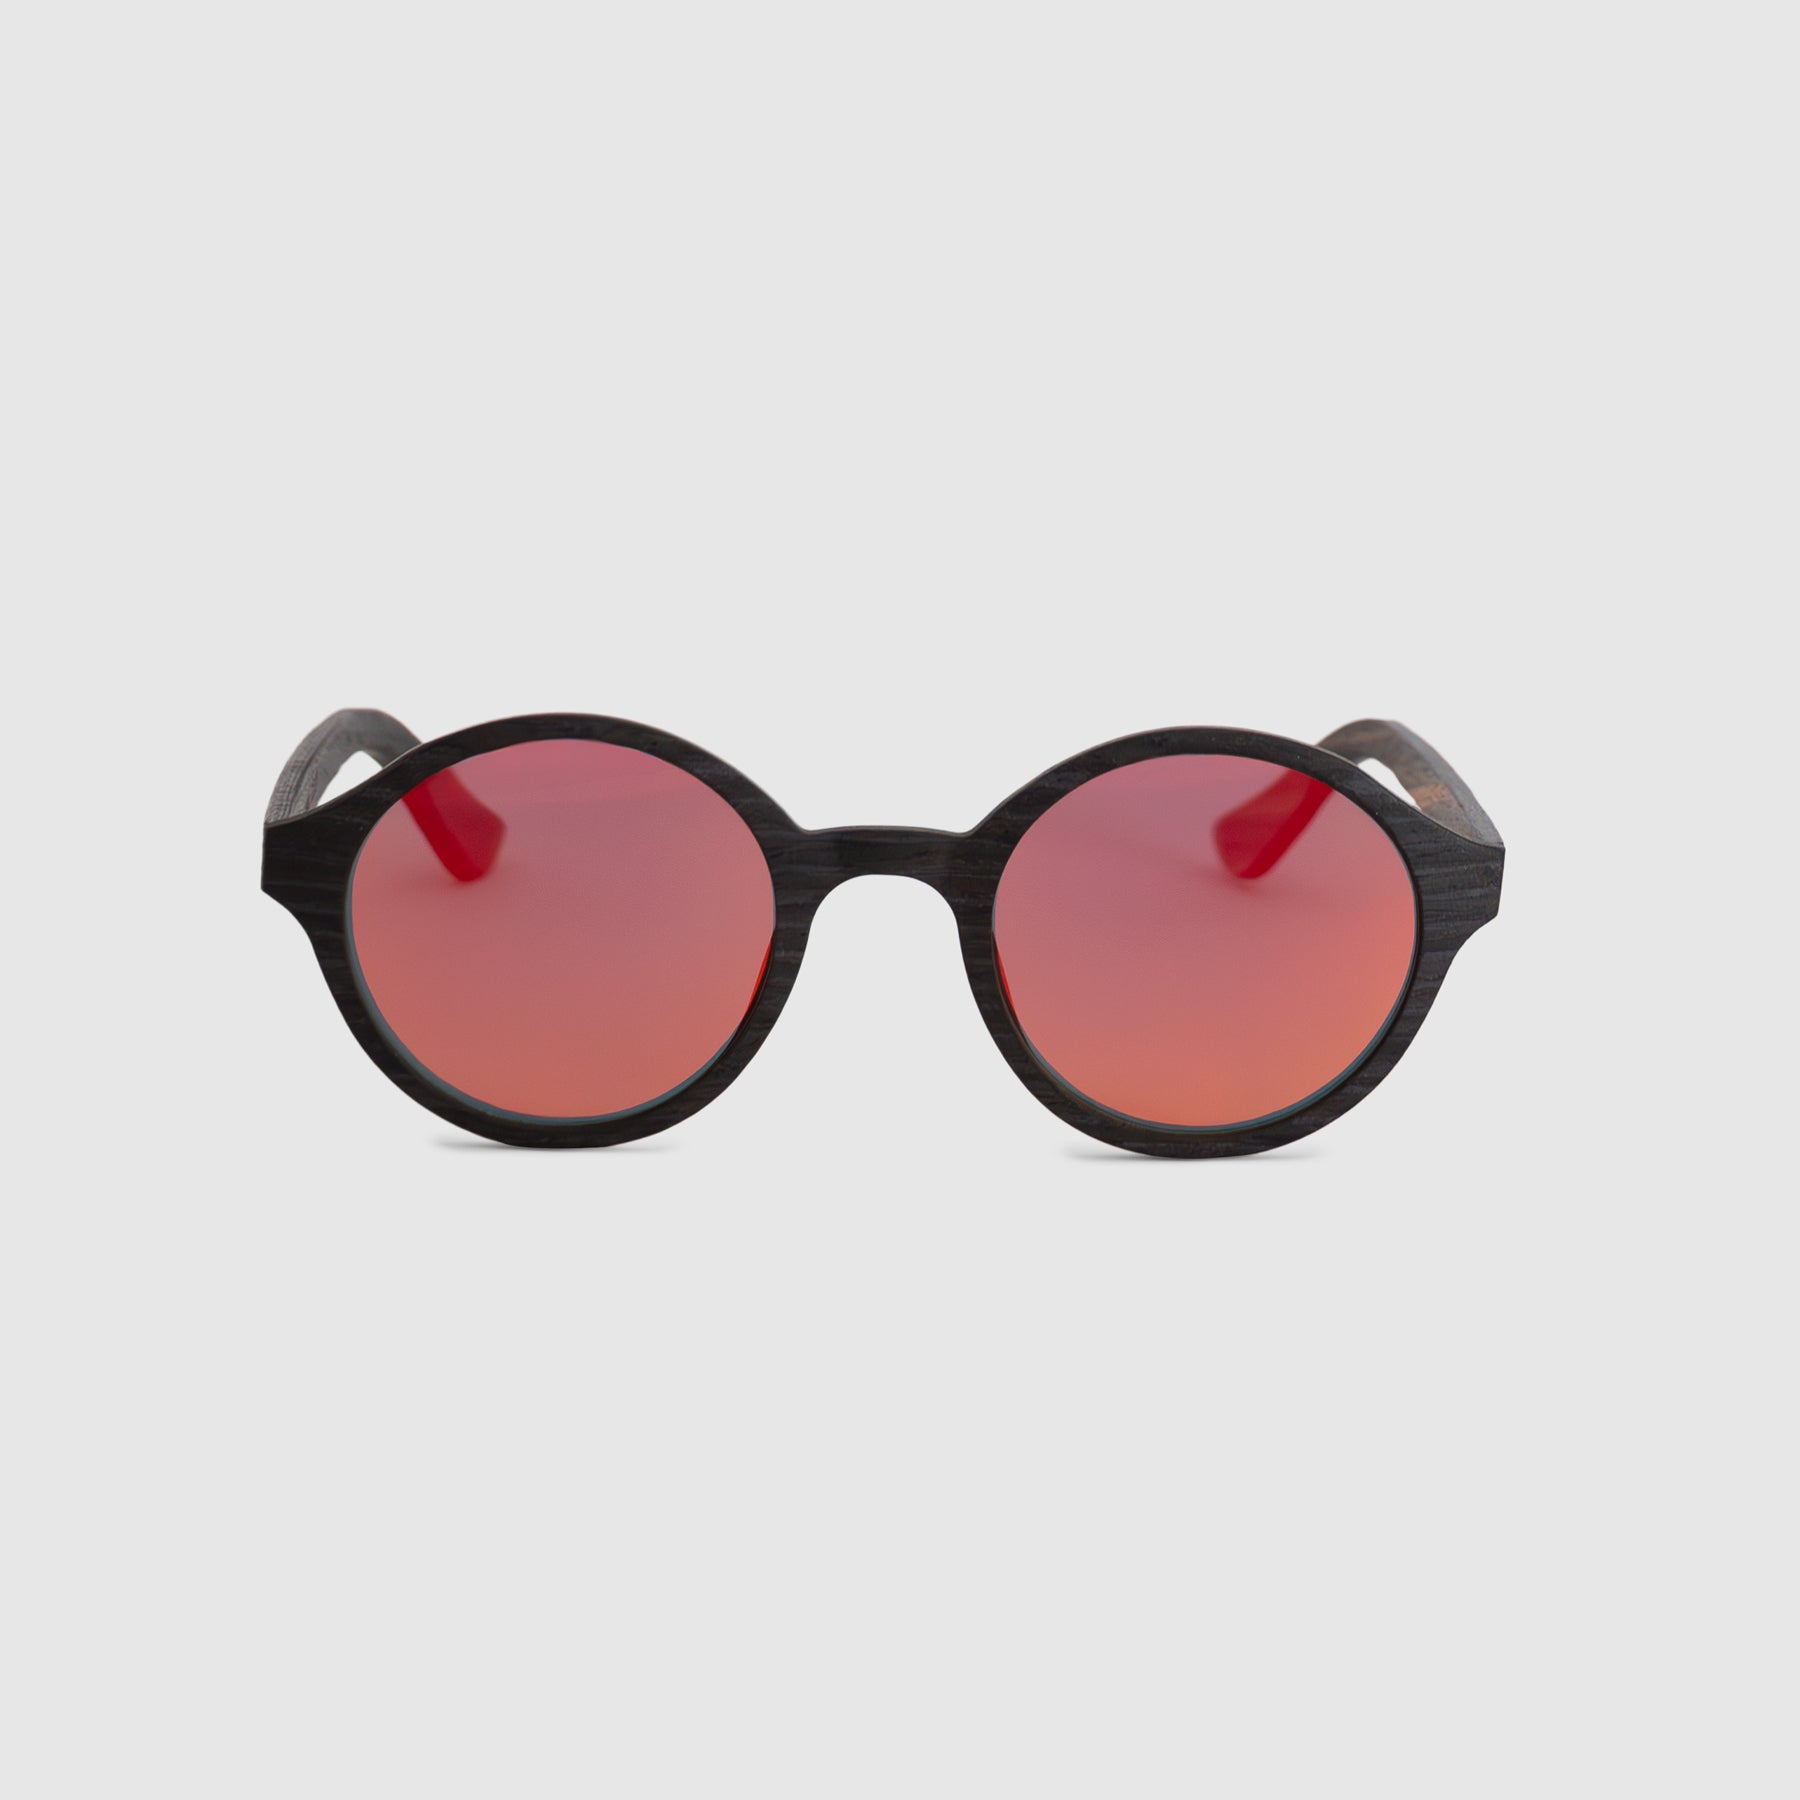 Laurel Dark Wood Round Sunglasses - Front View